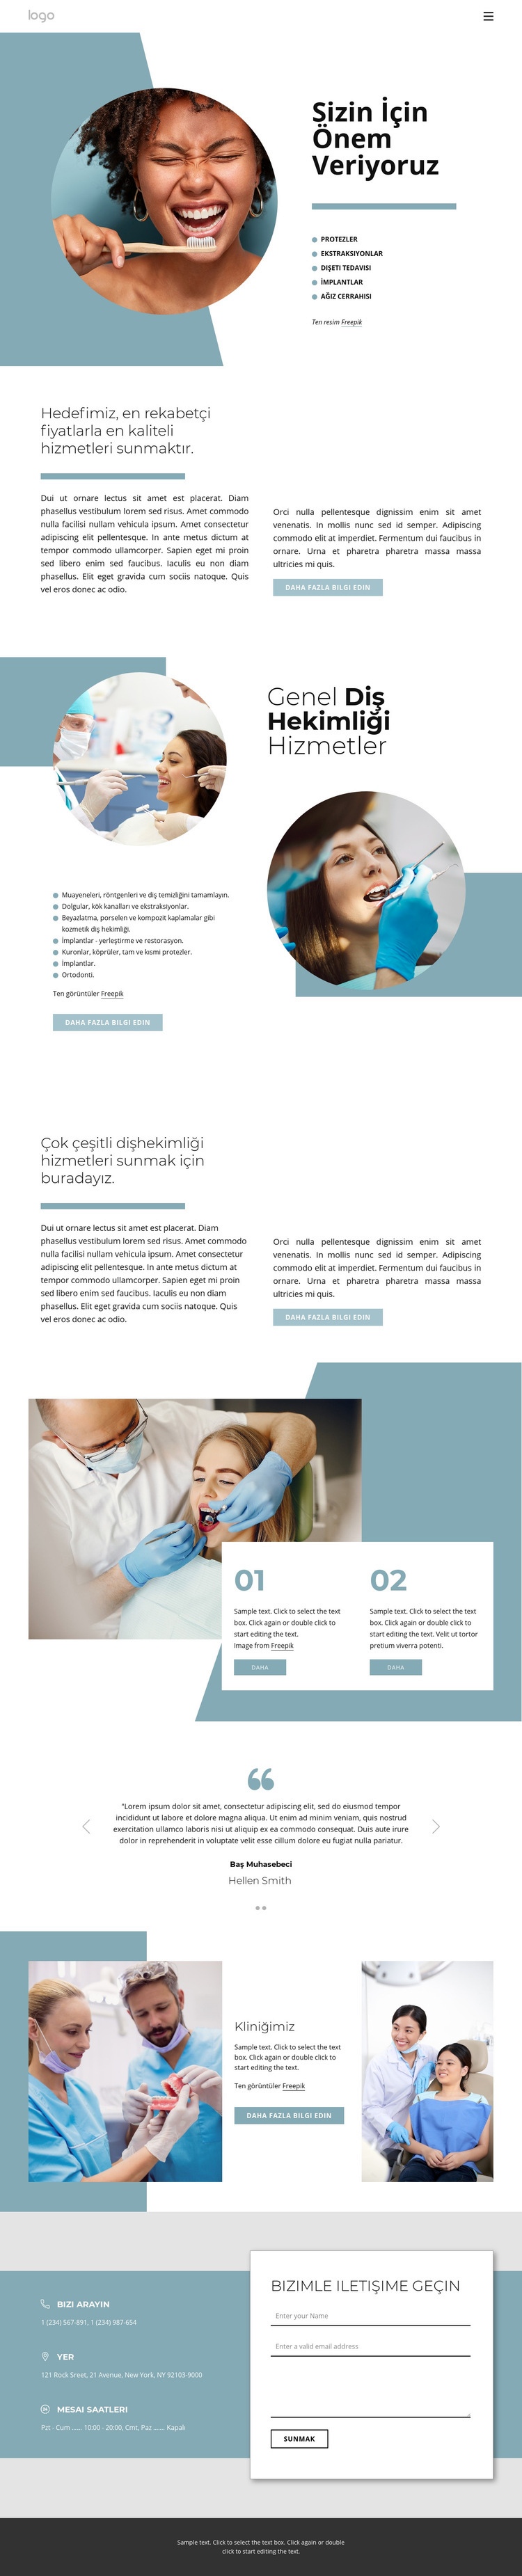 Yüksek kaliteli diş hizmetleri Bir Sayfa Şablonu